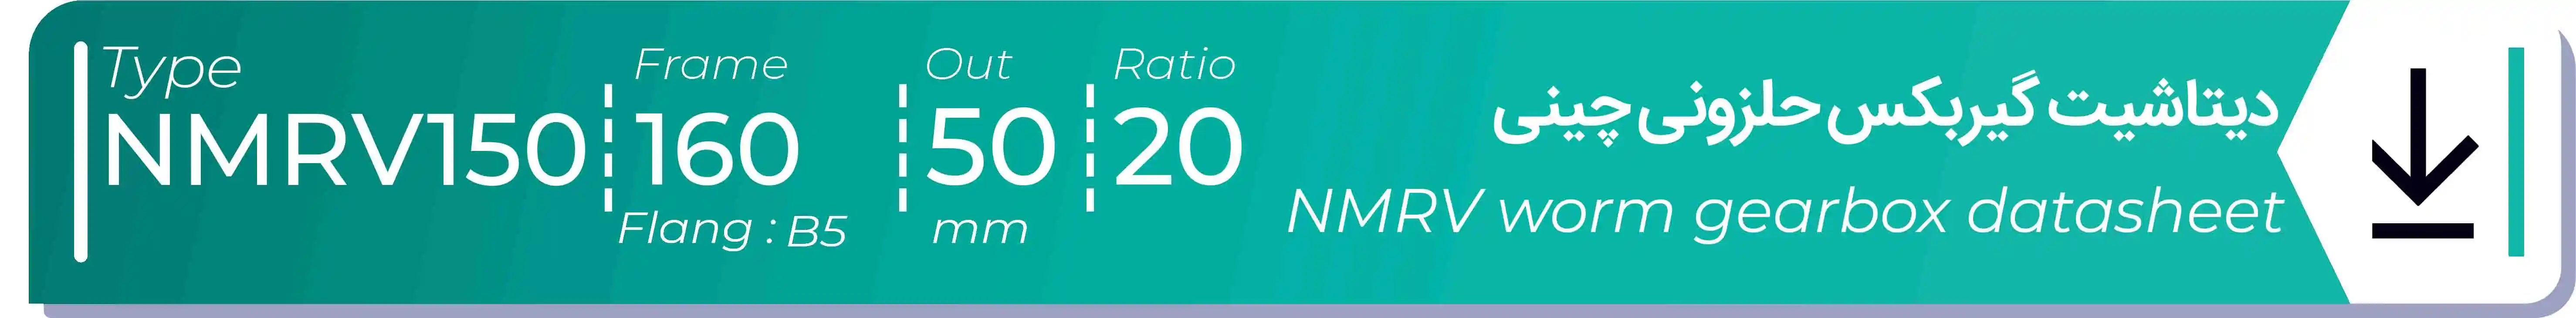  دیتاشیت و مشخصات فنی گیربکس حلزونی چینی   NMRV150  -  با خروجی 50- میلی متر و نسبت20 و فریم 160